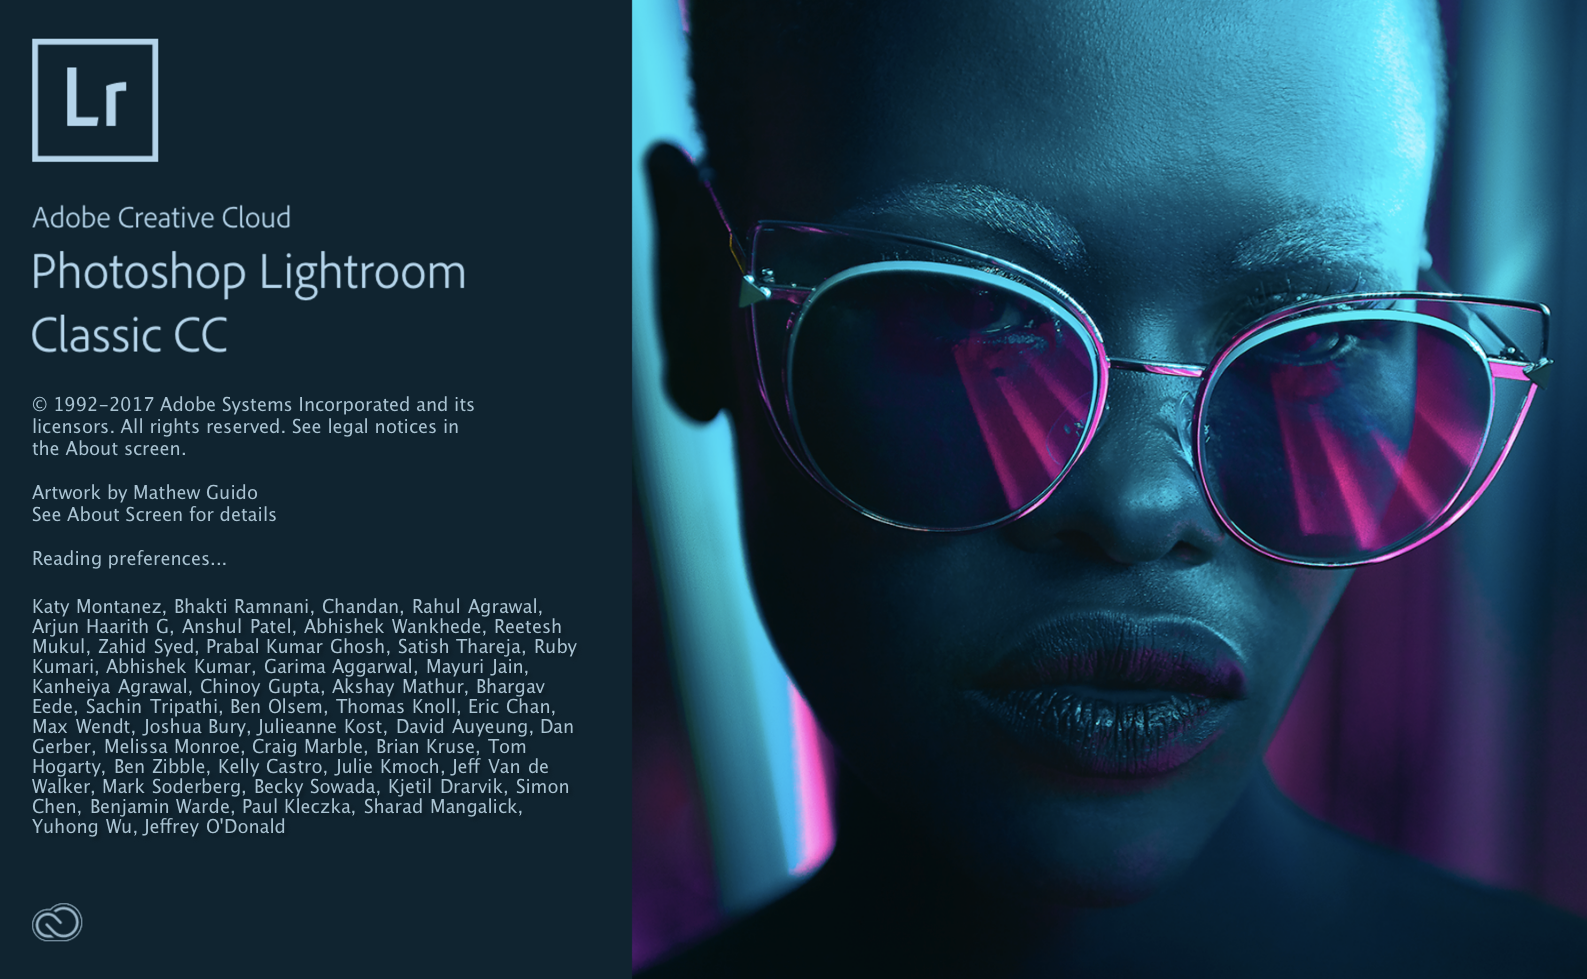 Download Adobe Photoshop Lightroom CC Mới Nhất 2018 Full Bản Quyền